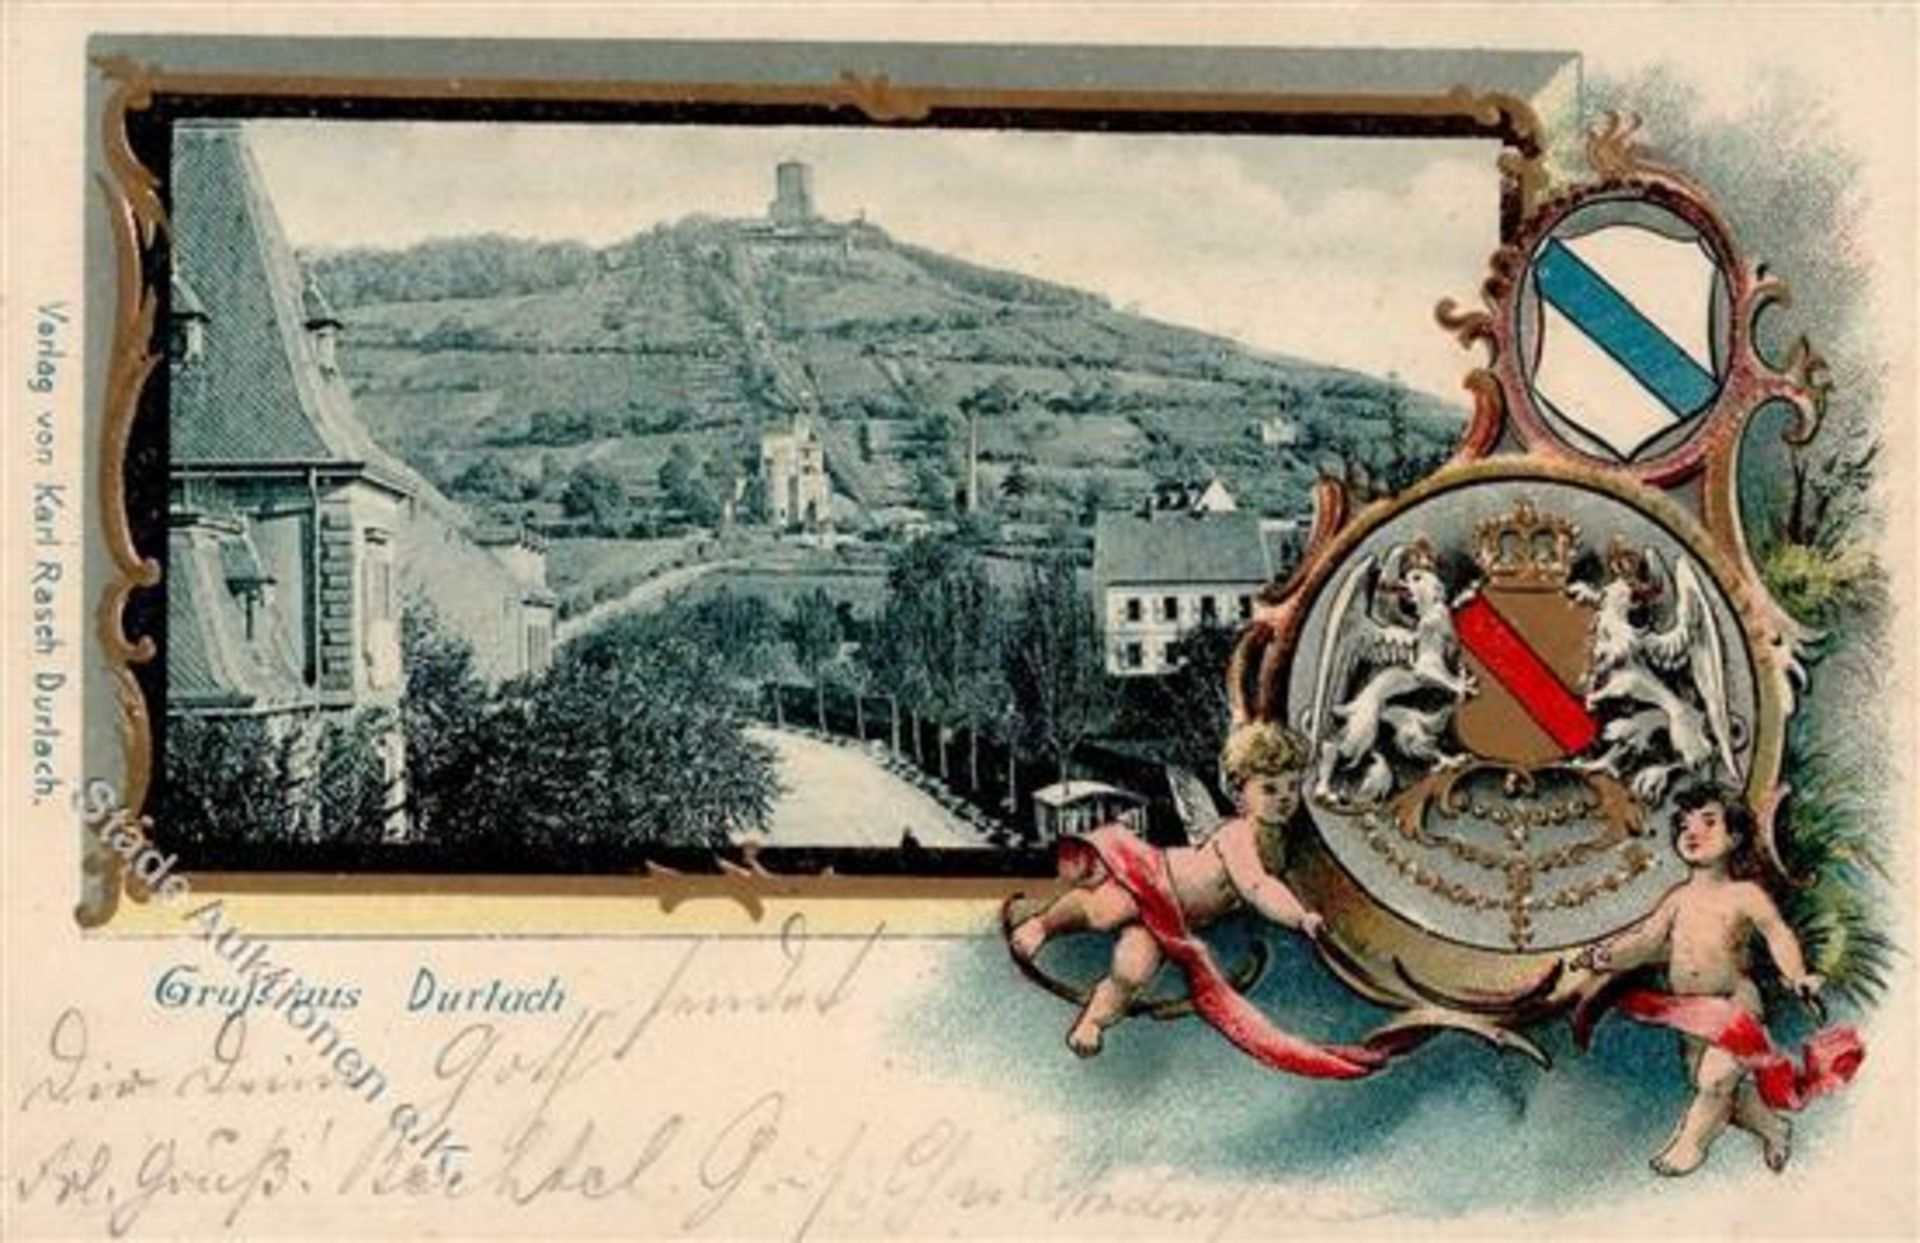 Durlach (7500) Ortsstraße Burg Prägedruck 1901 I-IIDieses Los wird in einer online-Auktion ohne